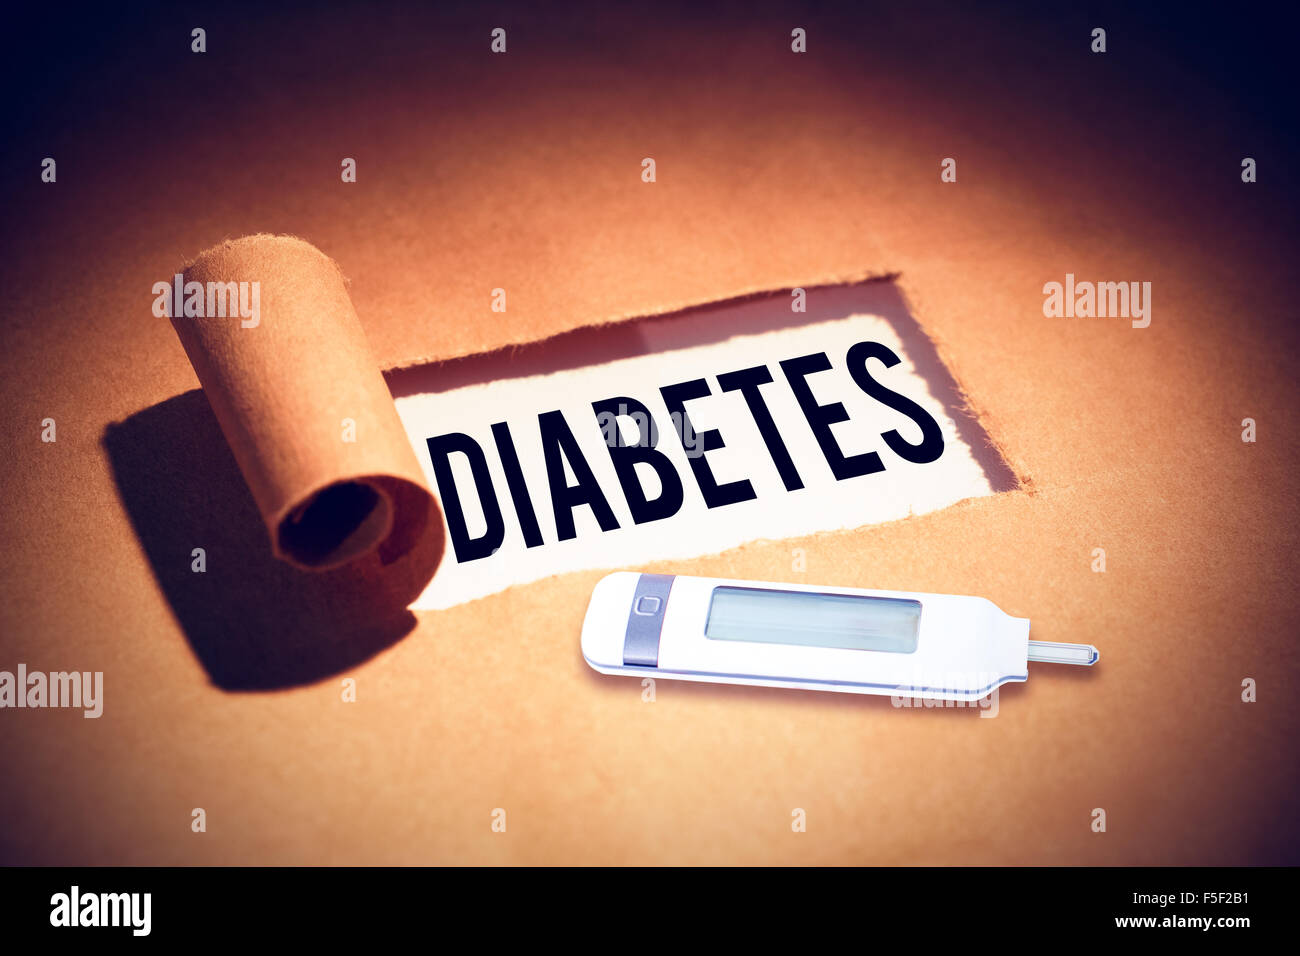 Imagen compuesta de diabetes Foto de stock